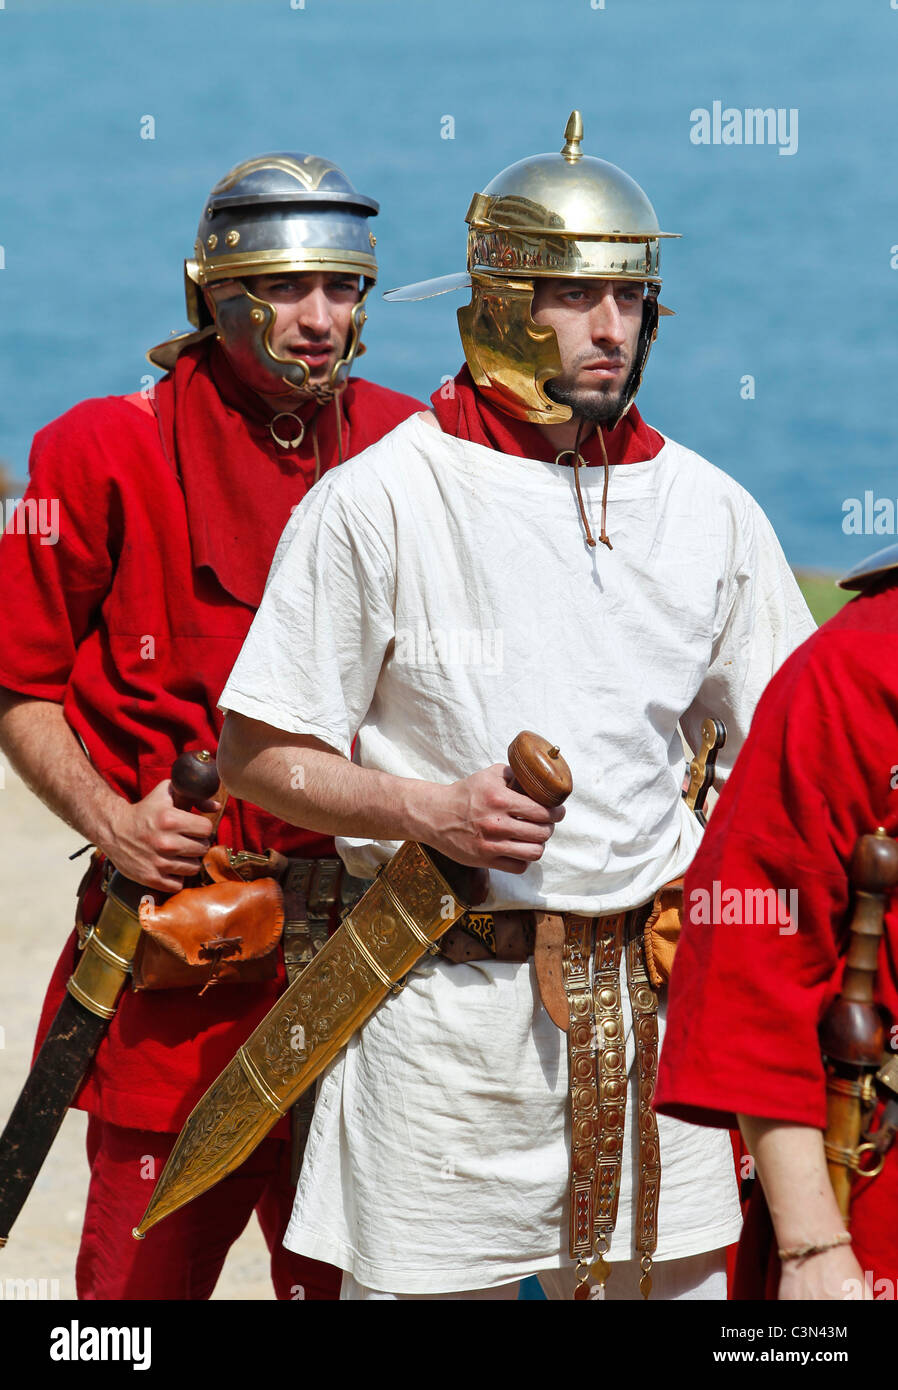 Les soldats romains à l'Escala, Catalogne, Espagne Banque D'Images